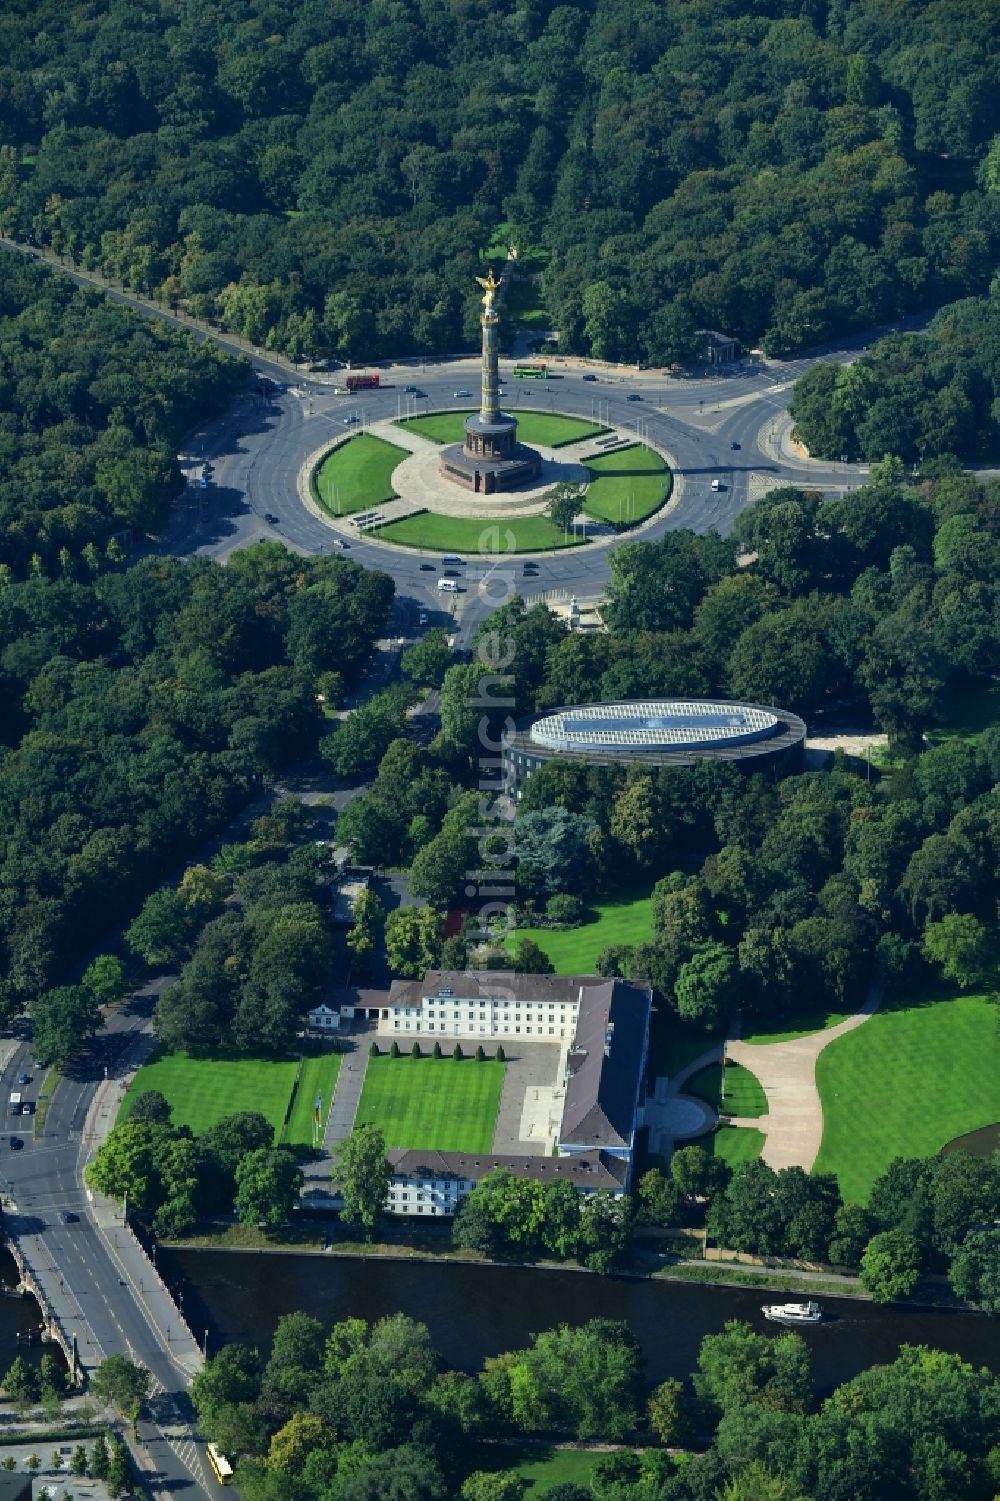 Berlin von oben - Amtssitz des Bundespräsidenten im Schloßpark von Schloß Bellevue am Spreeweg im Tiergarten in Berlin